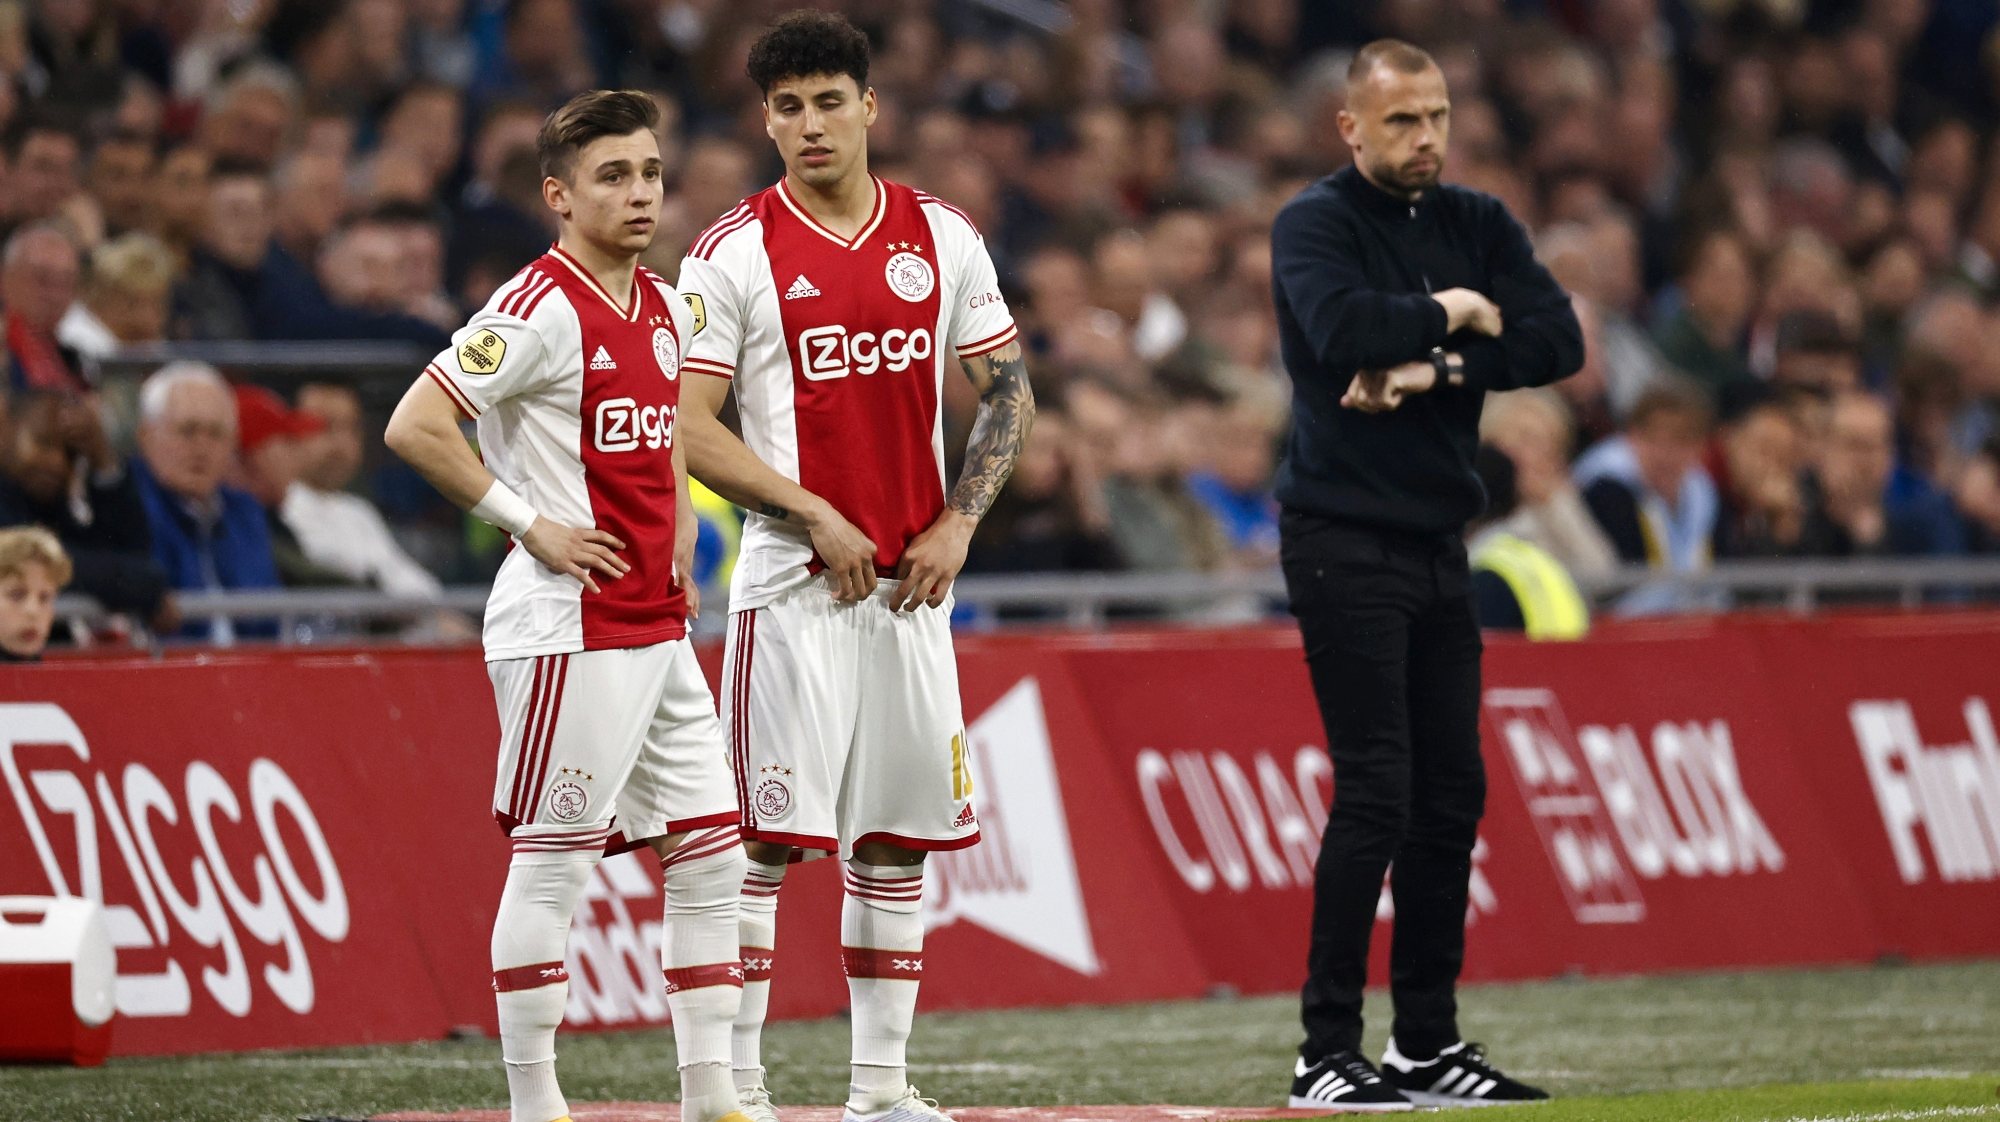 Jorge Sánchez cumpriu na última época a primeira experiência na Europa no Ajax ao lado de Francisco Conceição, que pode estar de regresso ao Dragão